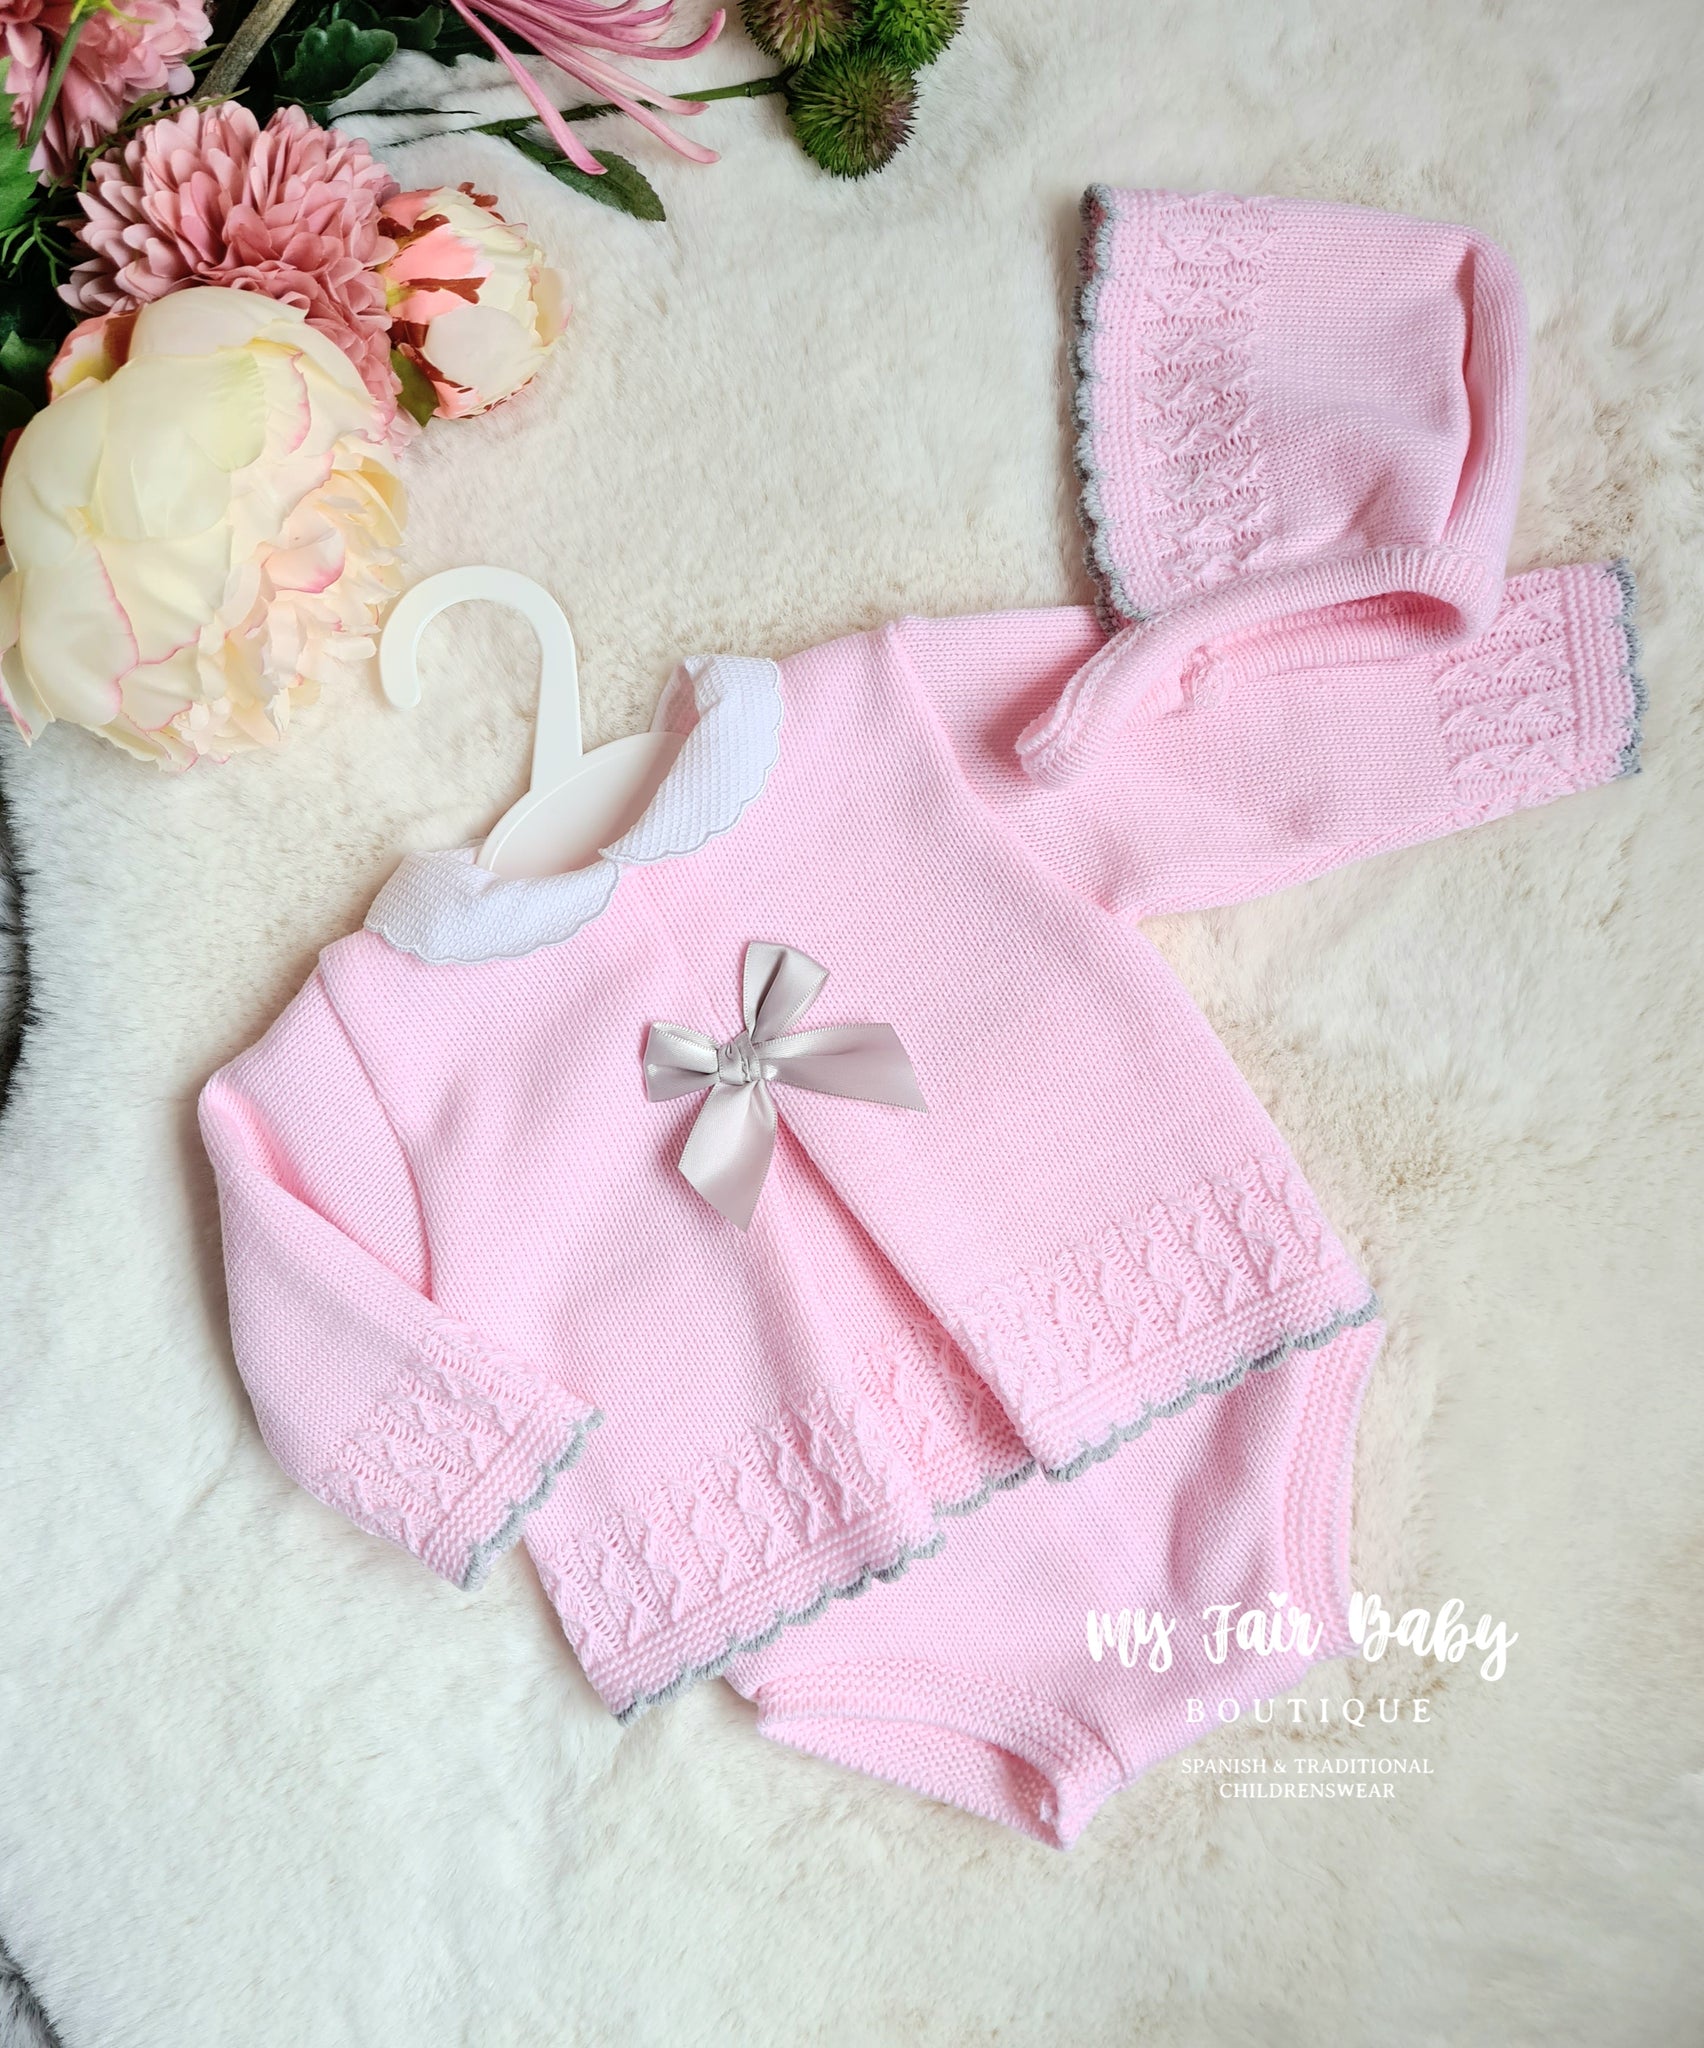 Spanish Baby Girls Pink & Grey Knitted Jam Pant Set - 6m